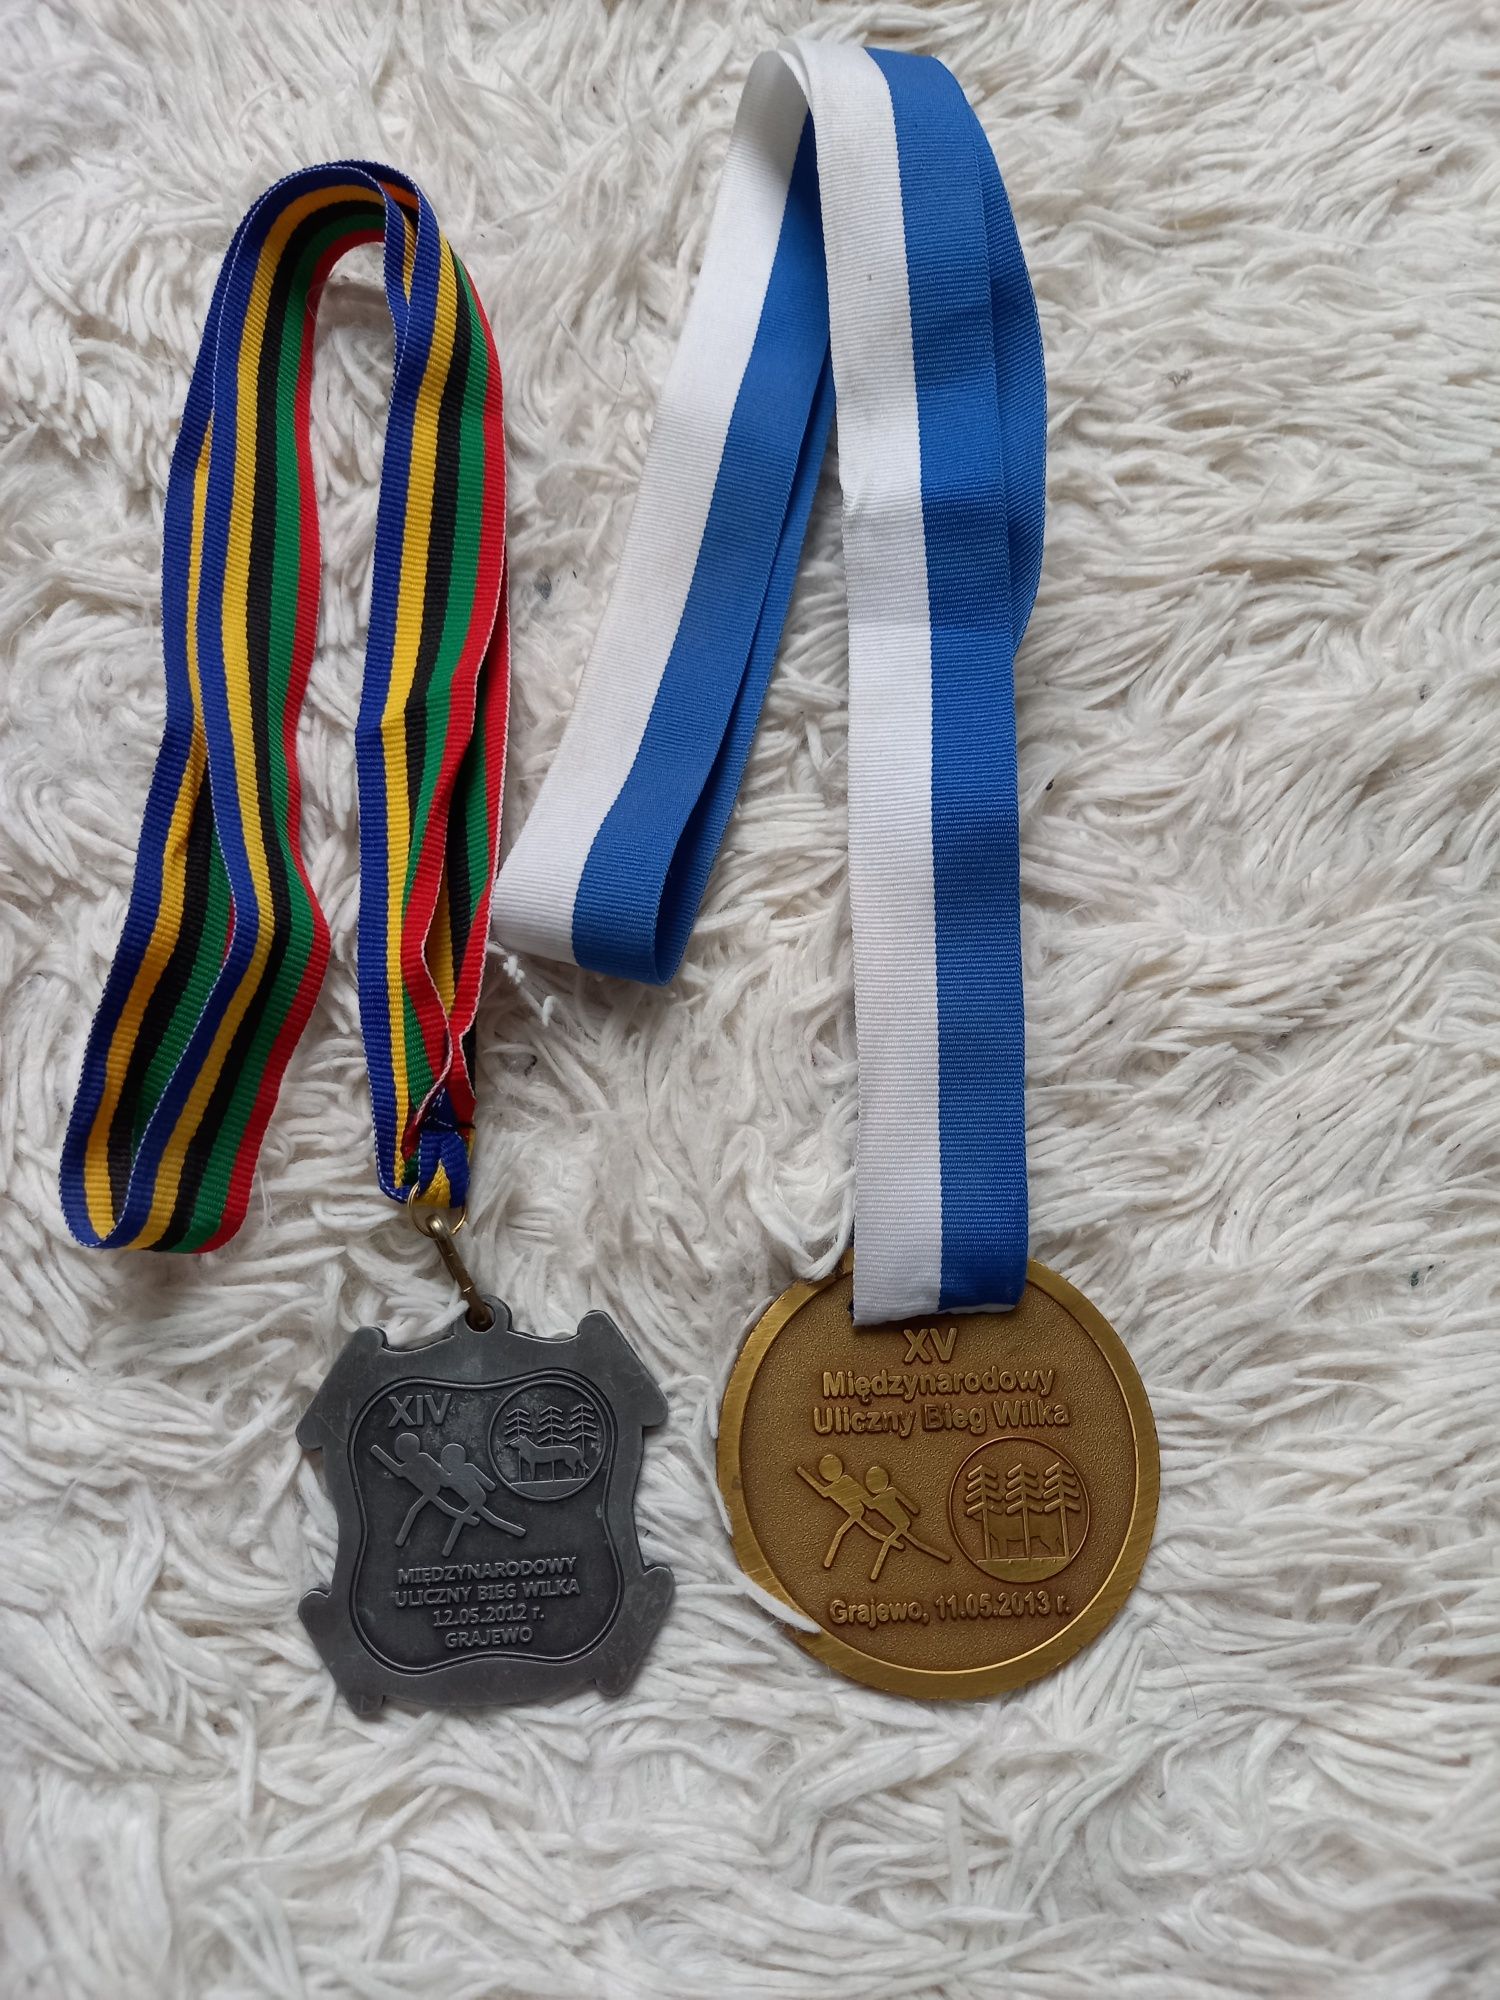 Medale  zdobyte w biegu ulicznym rok 2012 i2013